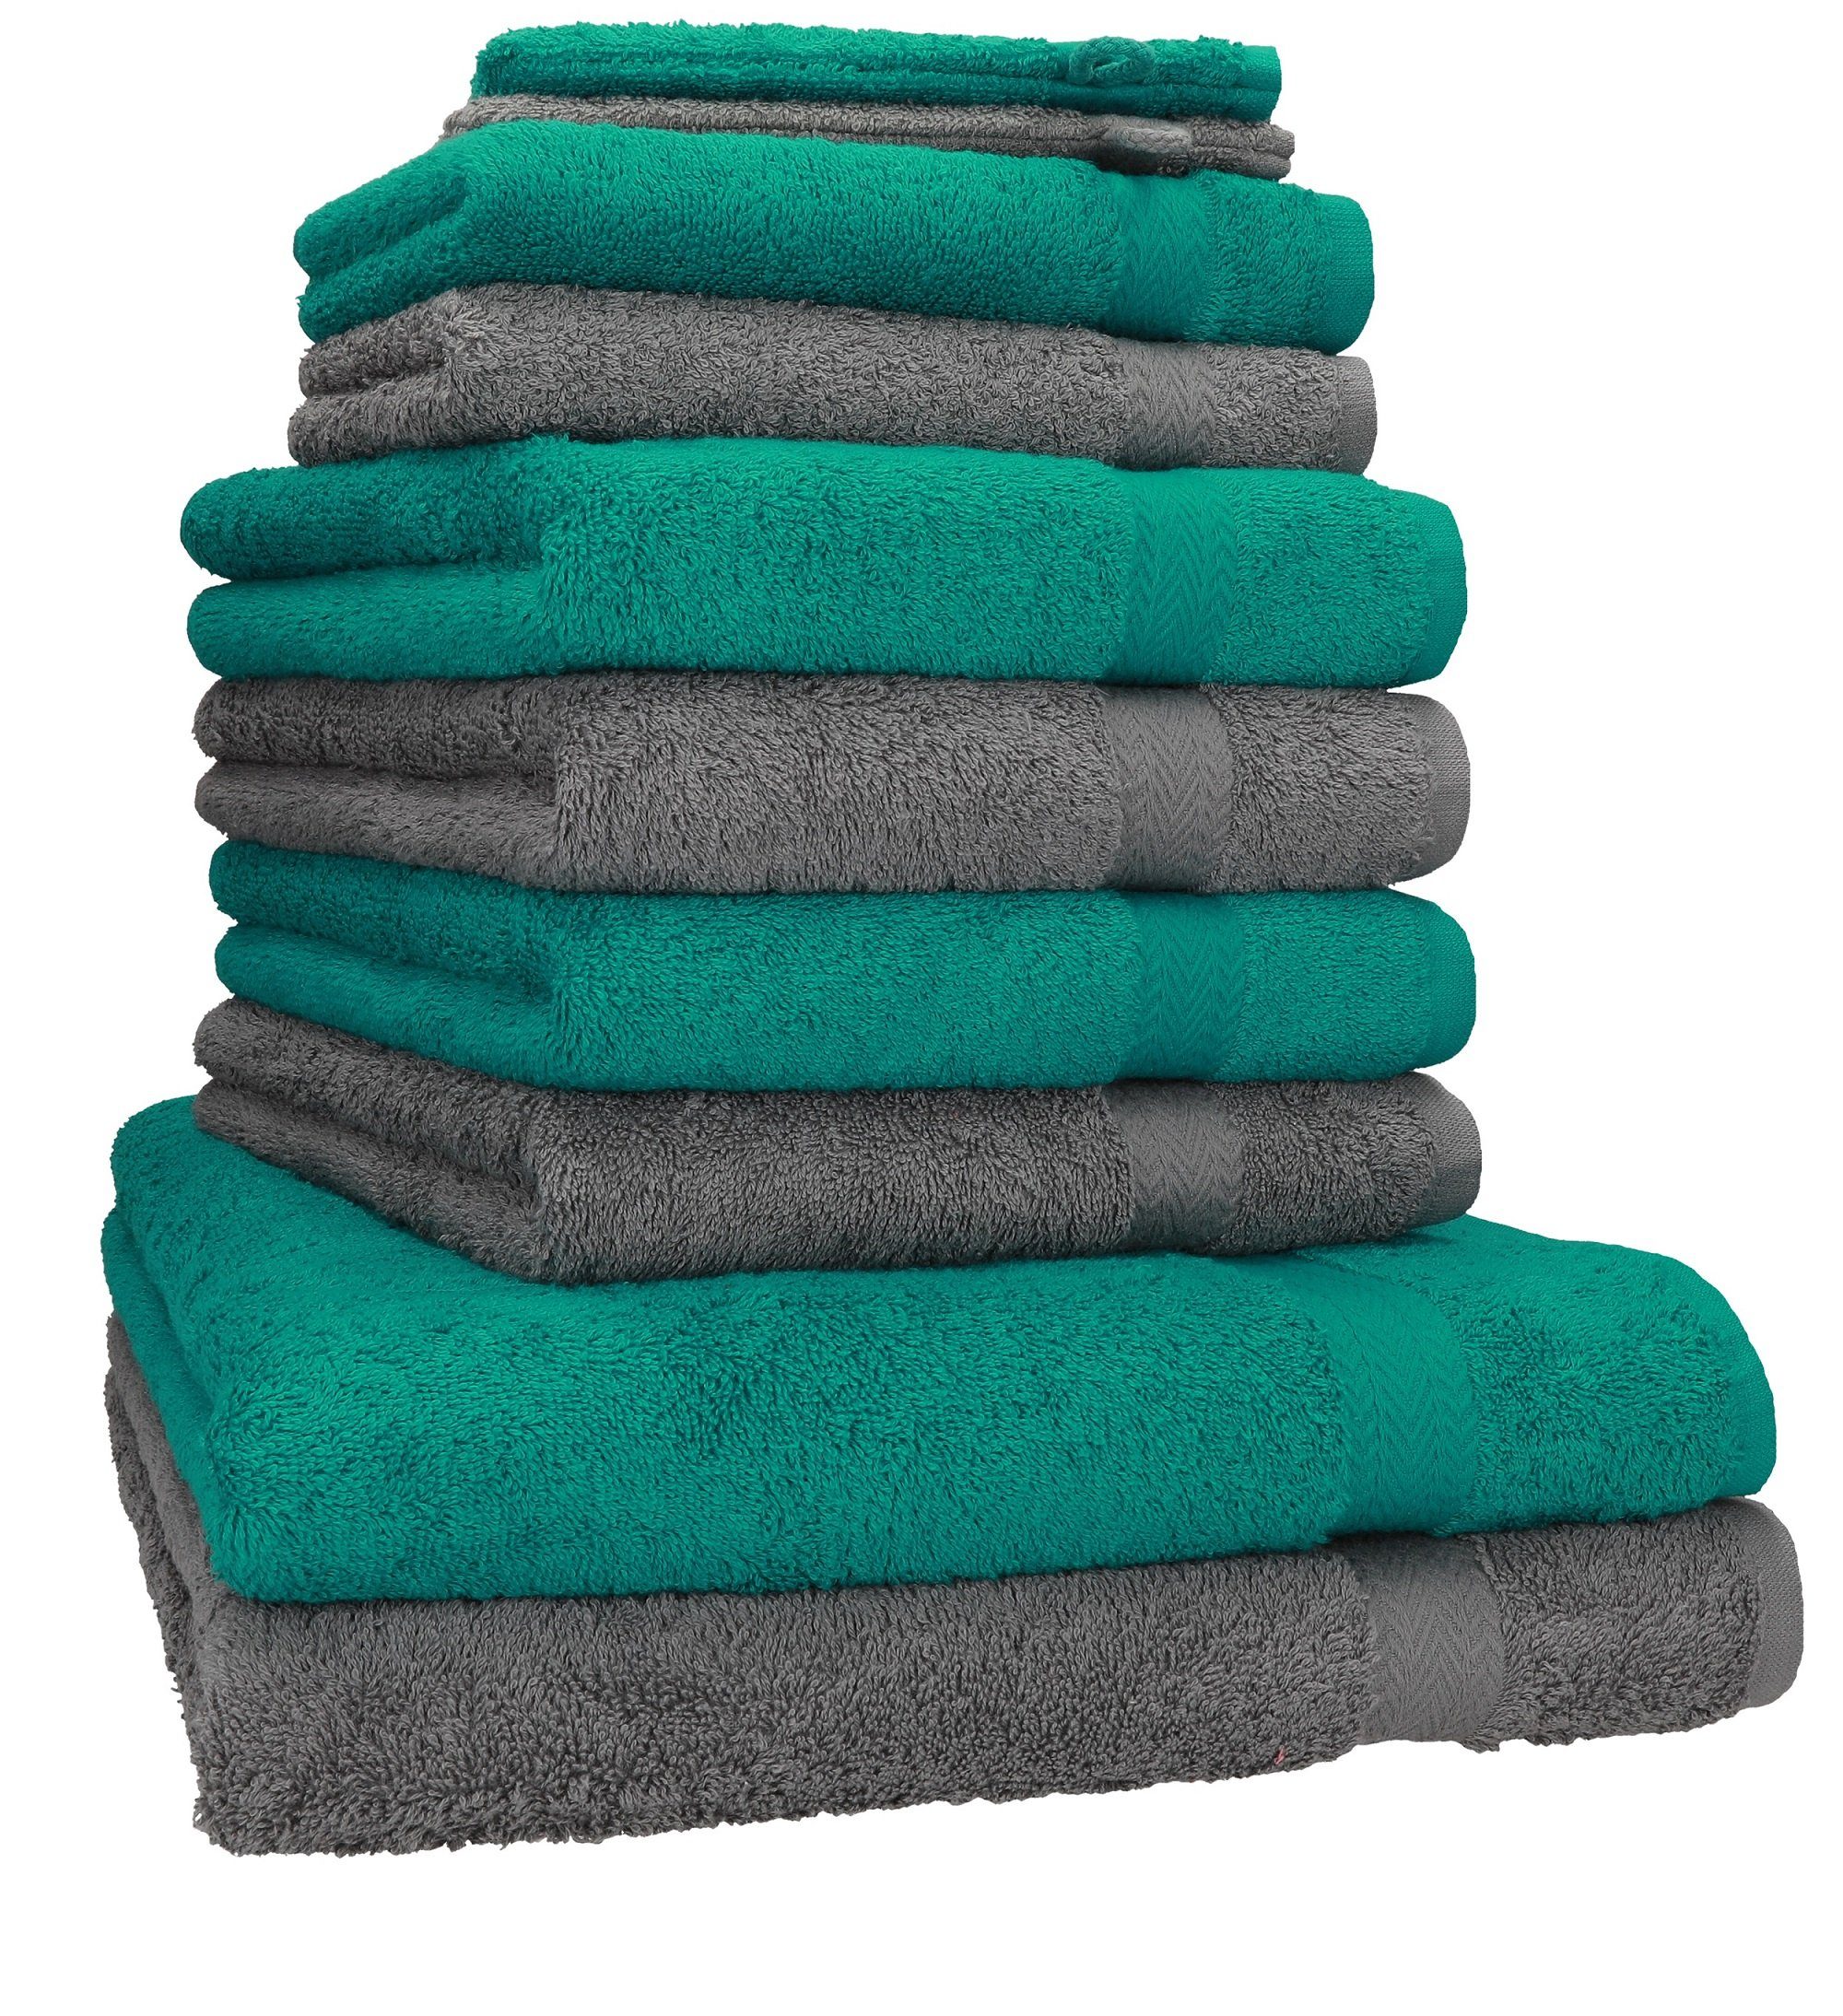 Betz Handtuch Set 10-TLG. Handtuch-Set Premium Farbe Smaragdgrün & Anthrazit, 100% Baumwolle, (10-tlg)